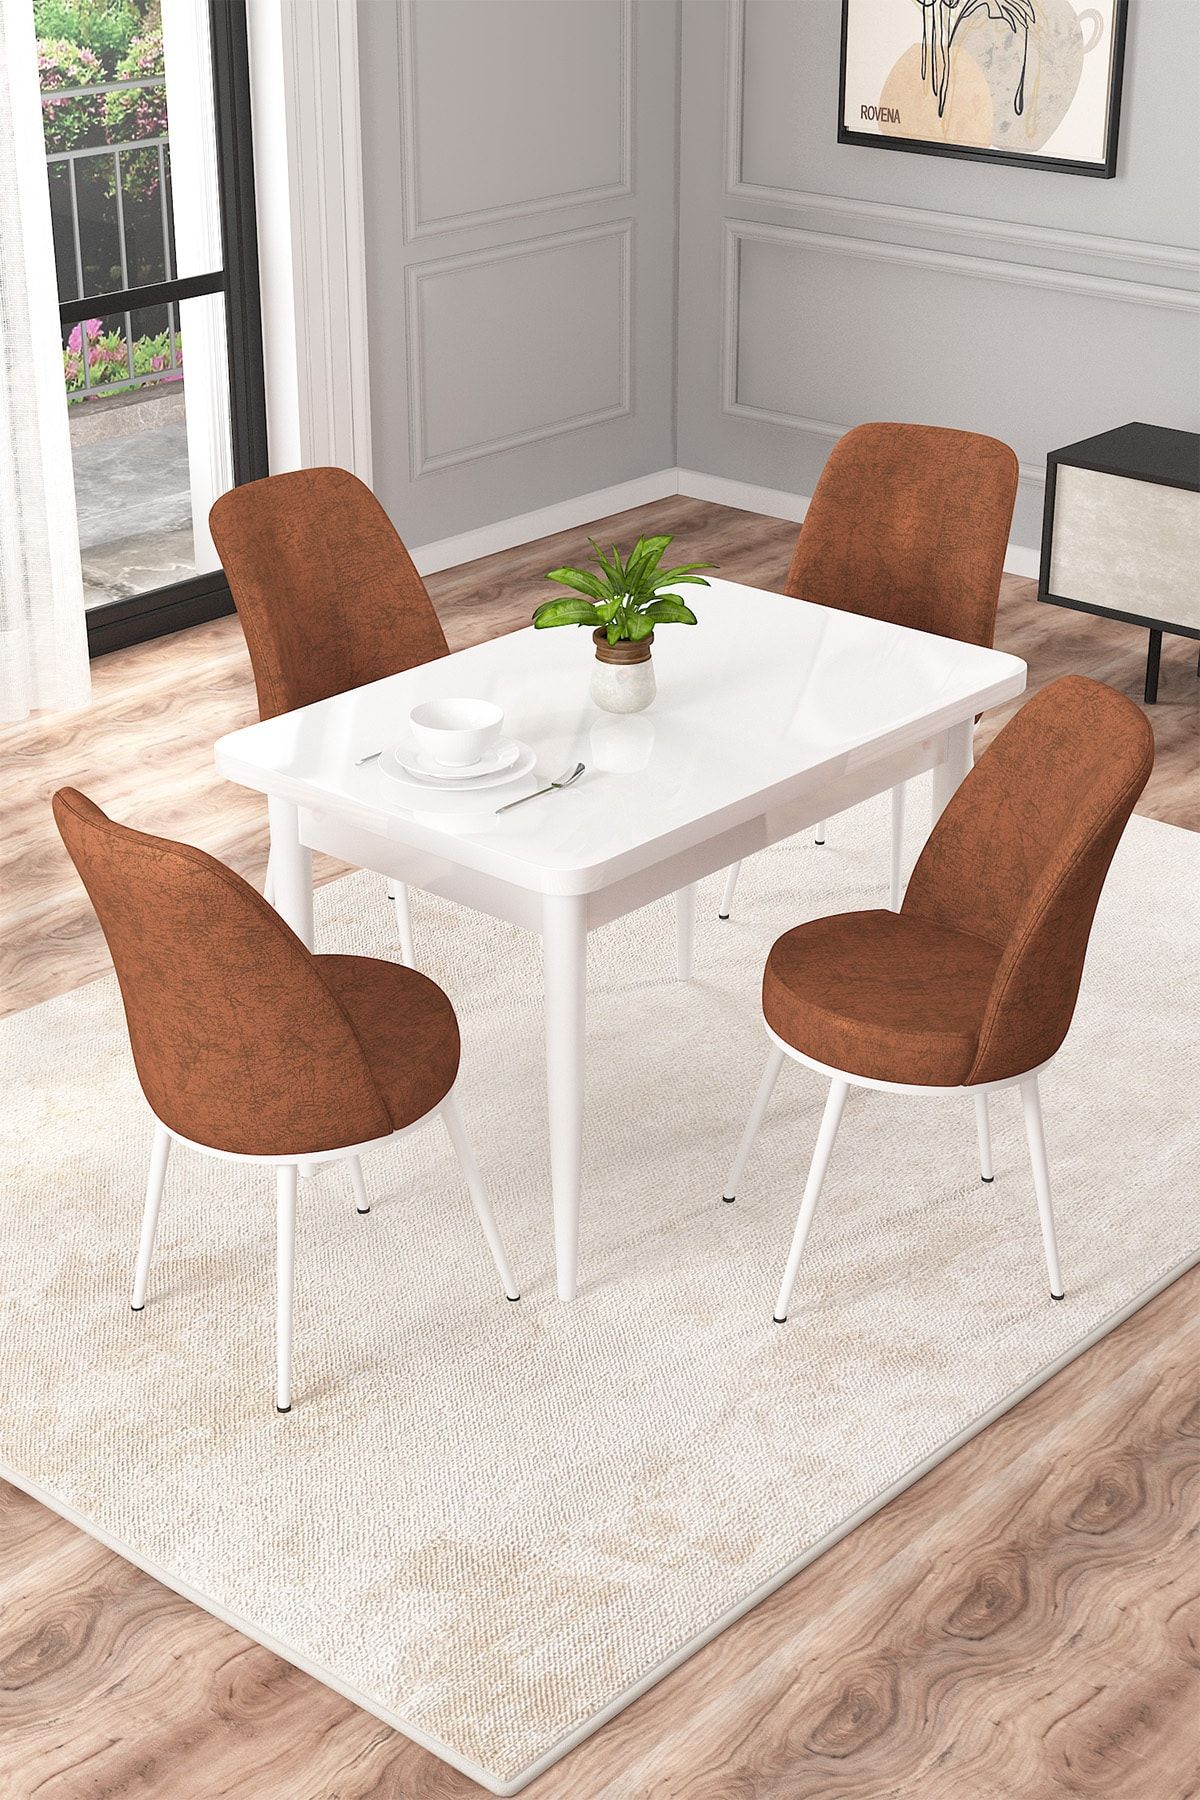 Rovena Duru Beyaz 70x110 Mdf Sabit Mutfak Masası Takımı 4 Adet Sandalye